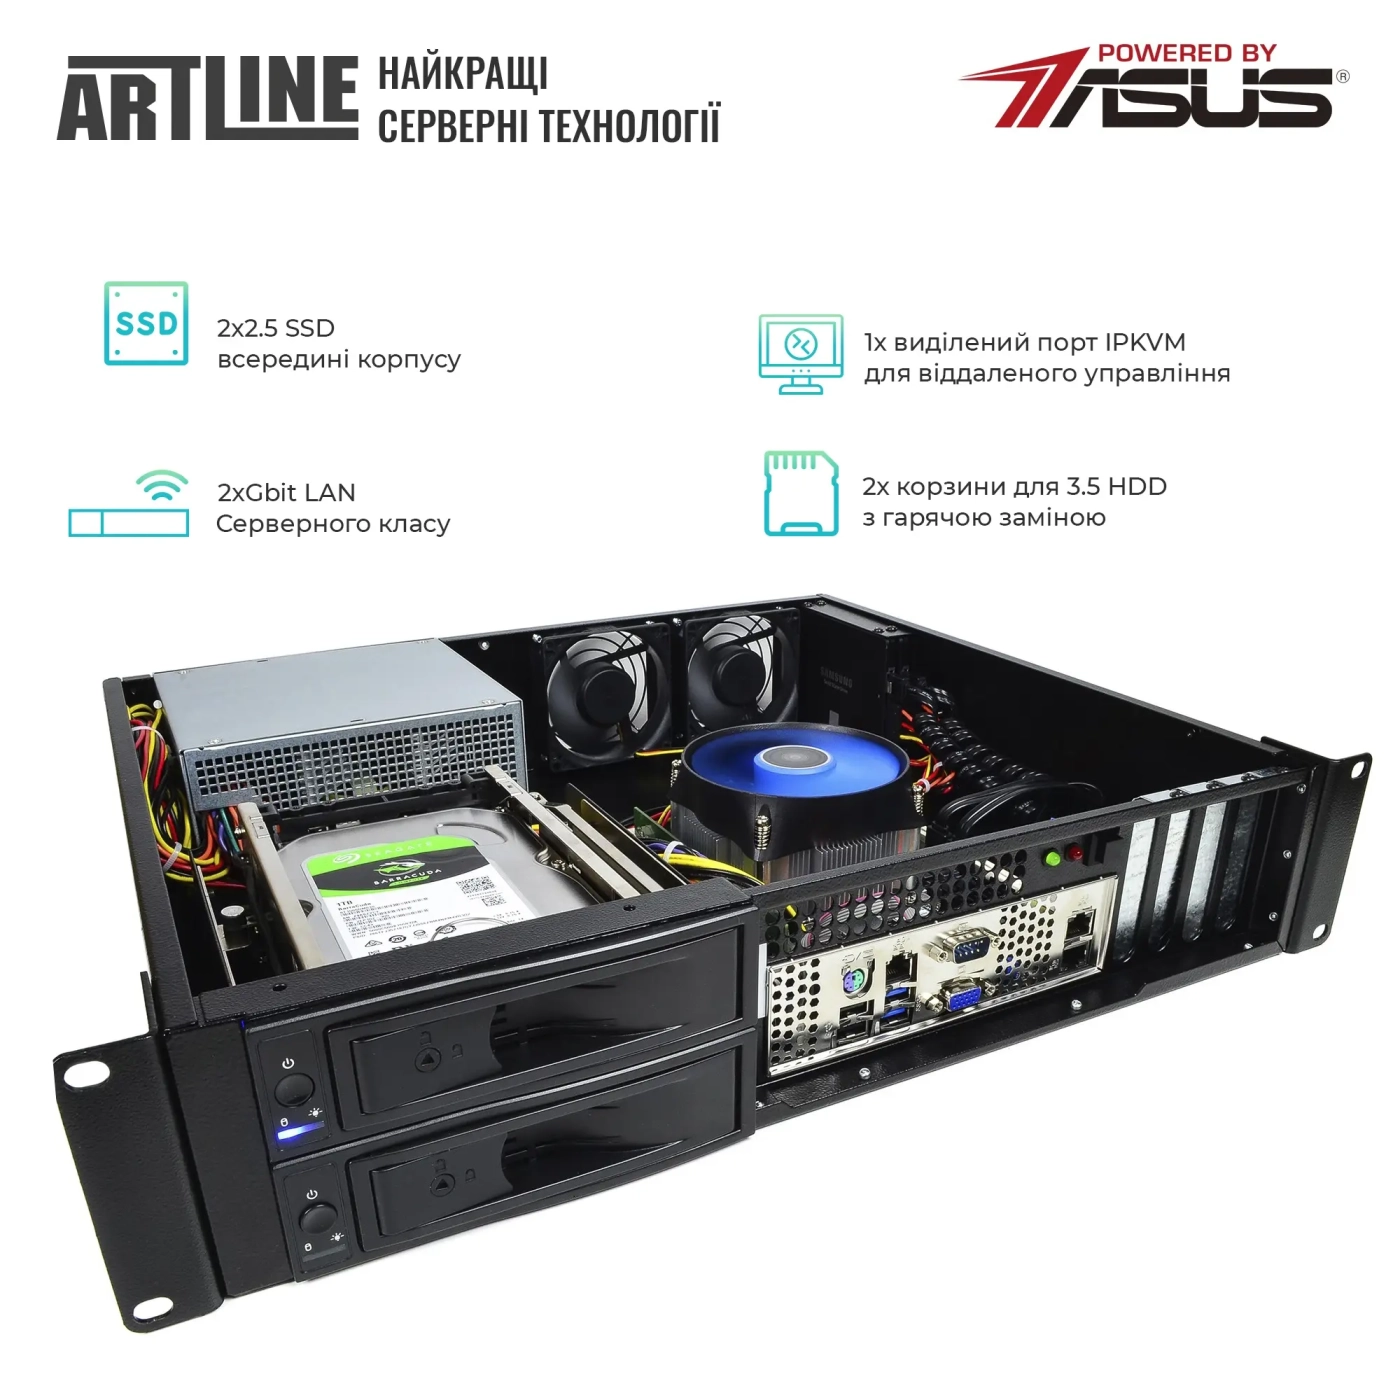 Купить Сервер ARTLINE Business R35 (R35v42) - фото 2